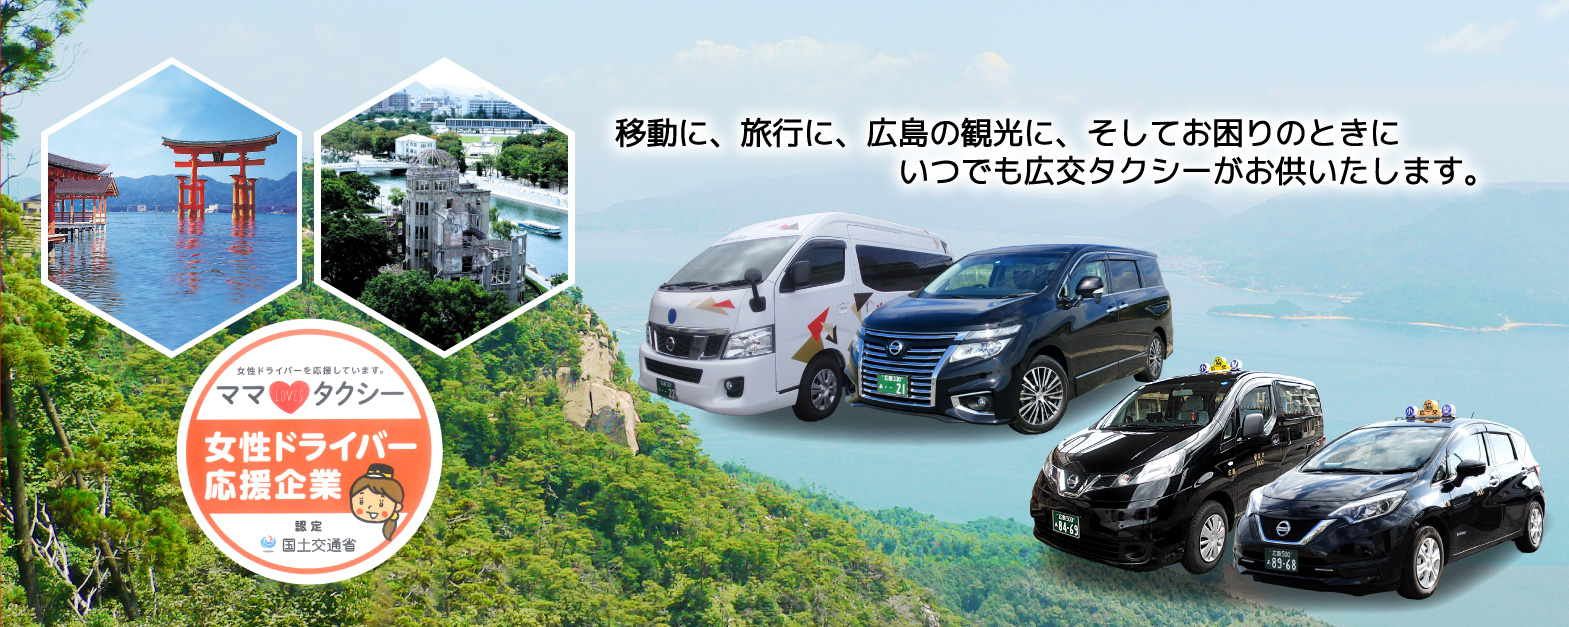 移動に、旅行に、広島の観光に　お困りのときに　いつでも広交タクシーがお供いたします